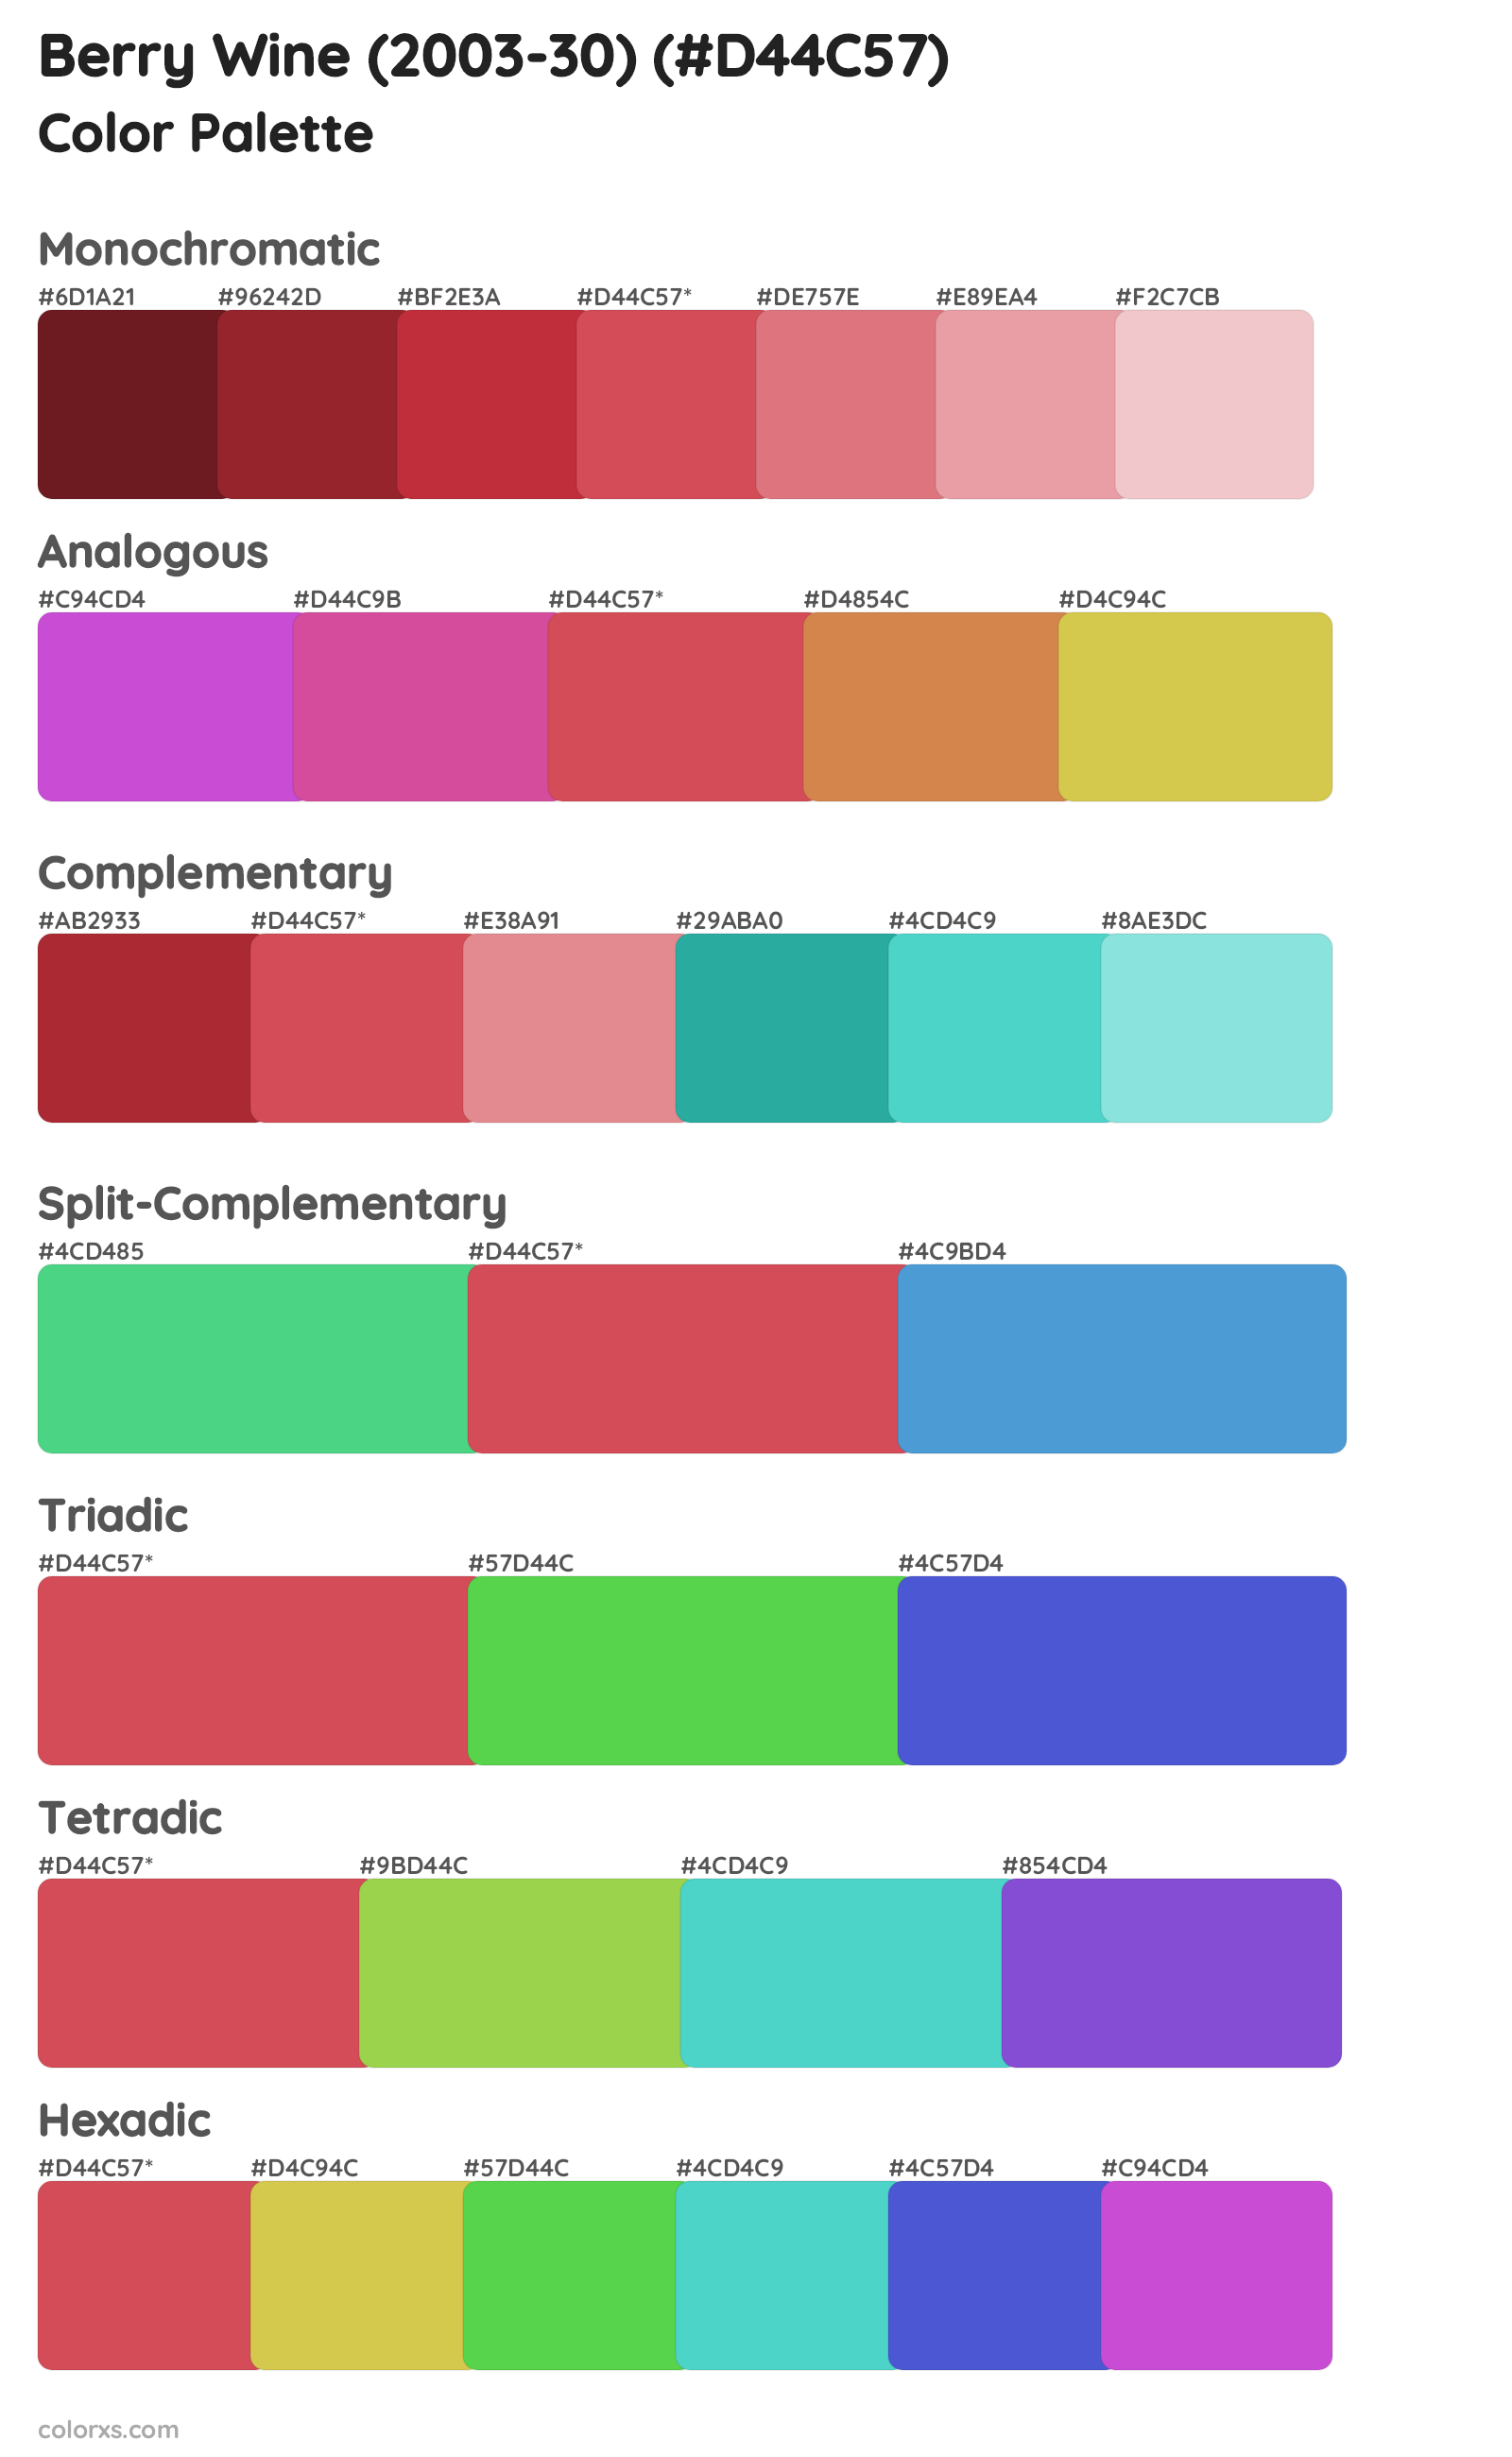 Berry Wine (2003-30) Color Scheme Palettes